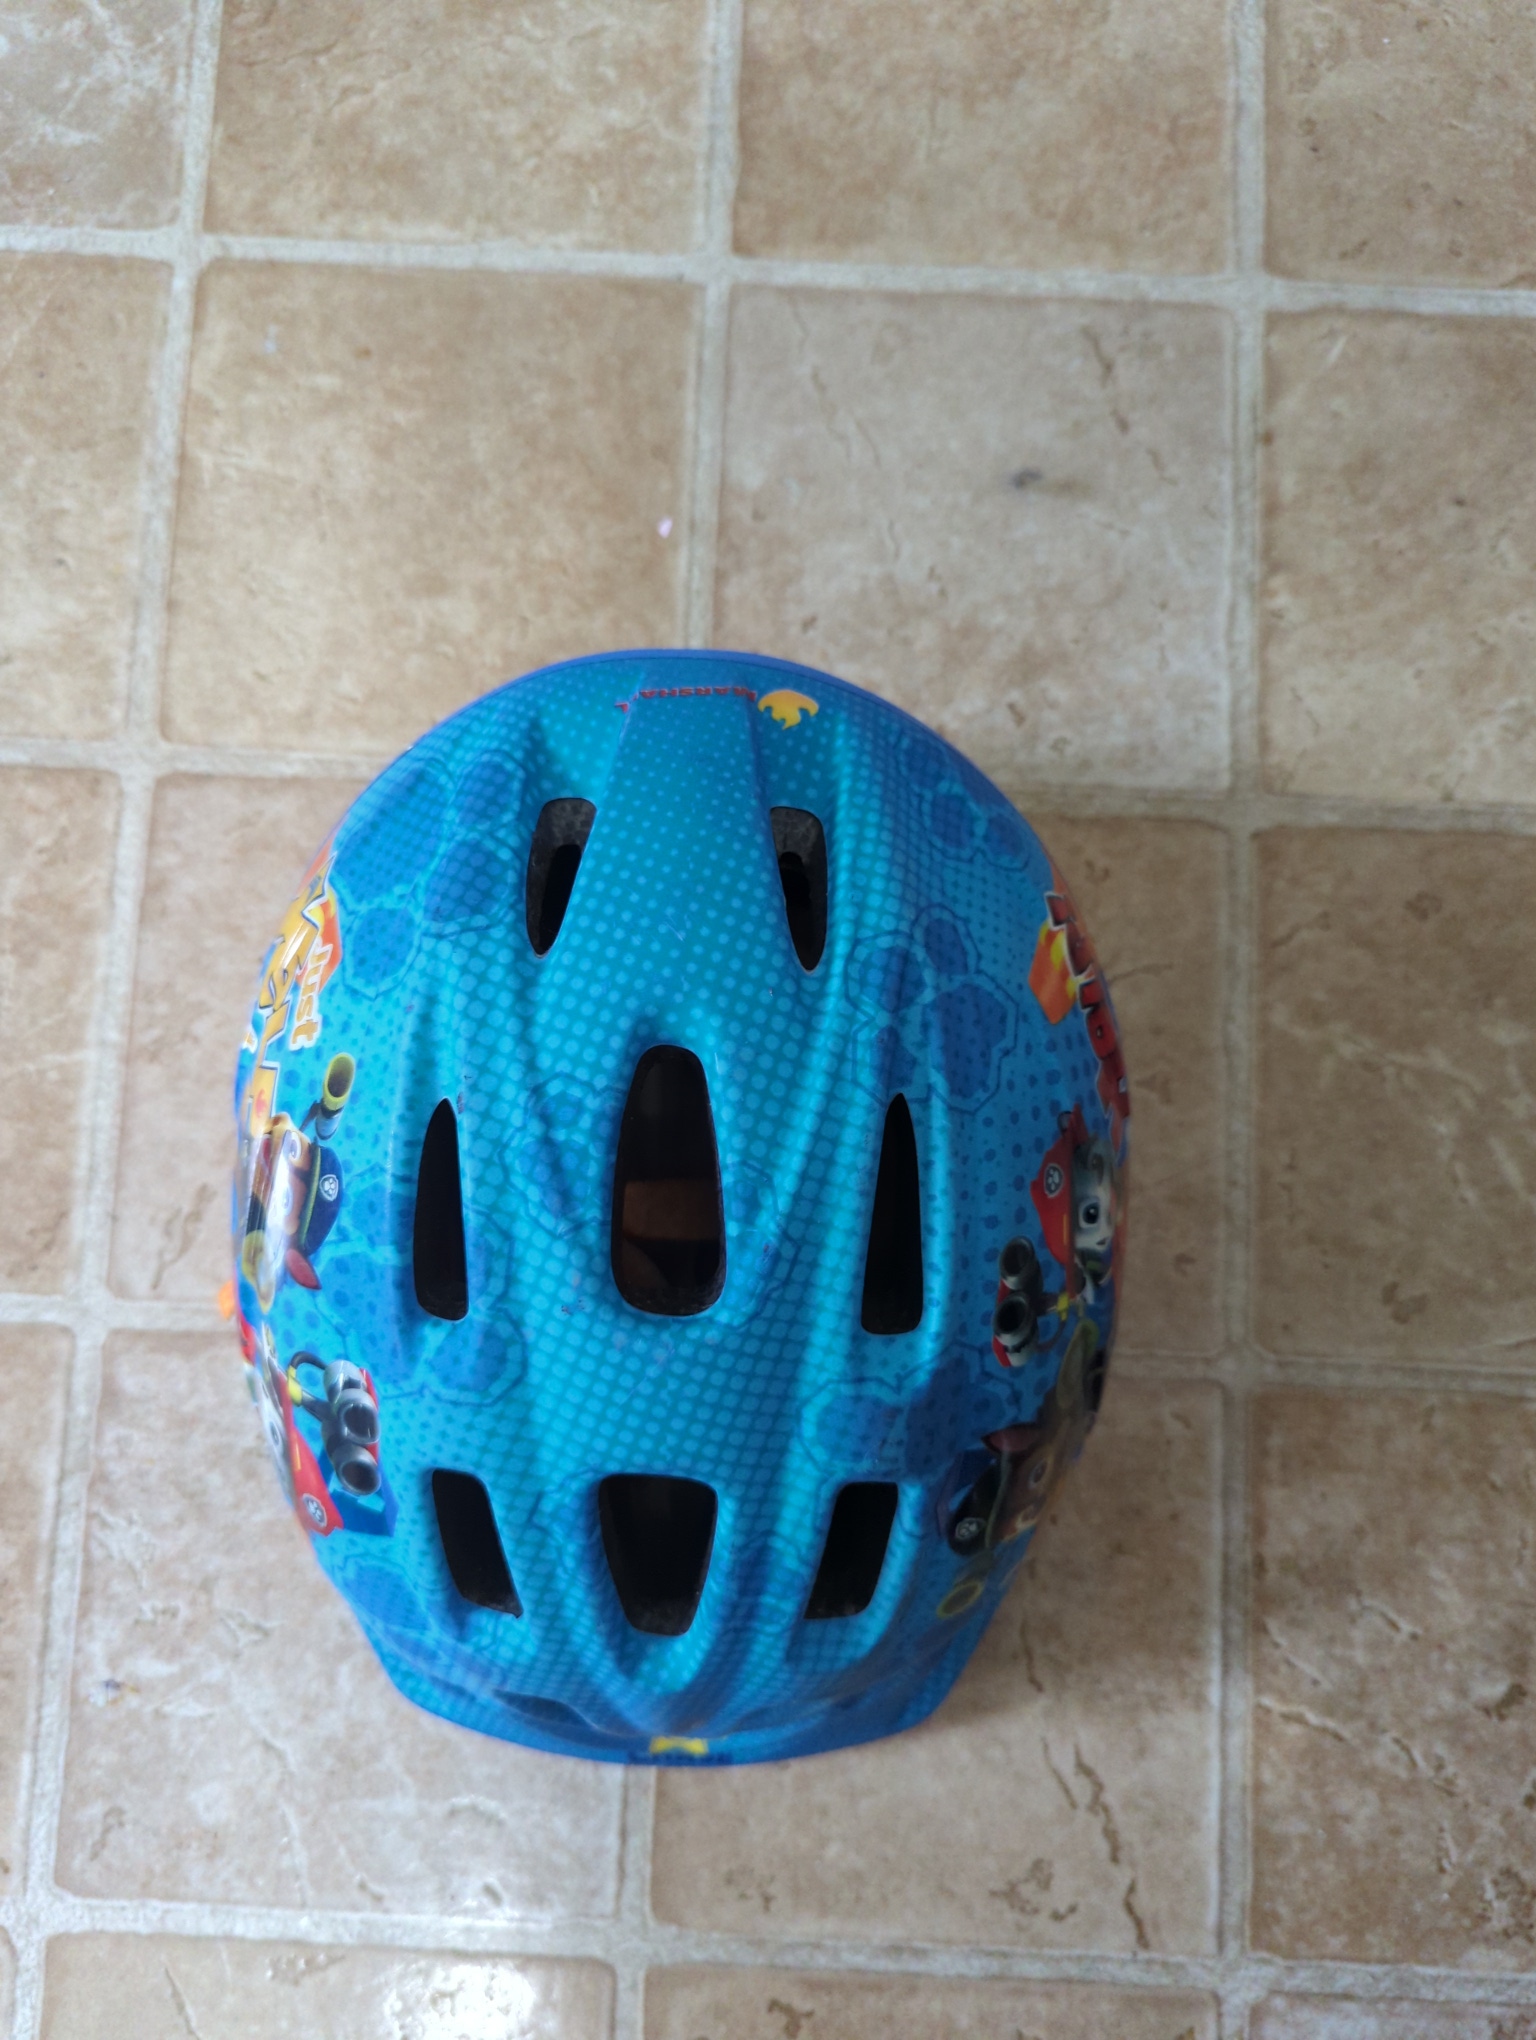 Used paw patrol bike helmet